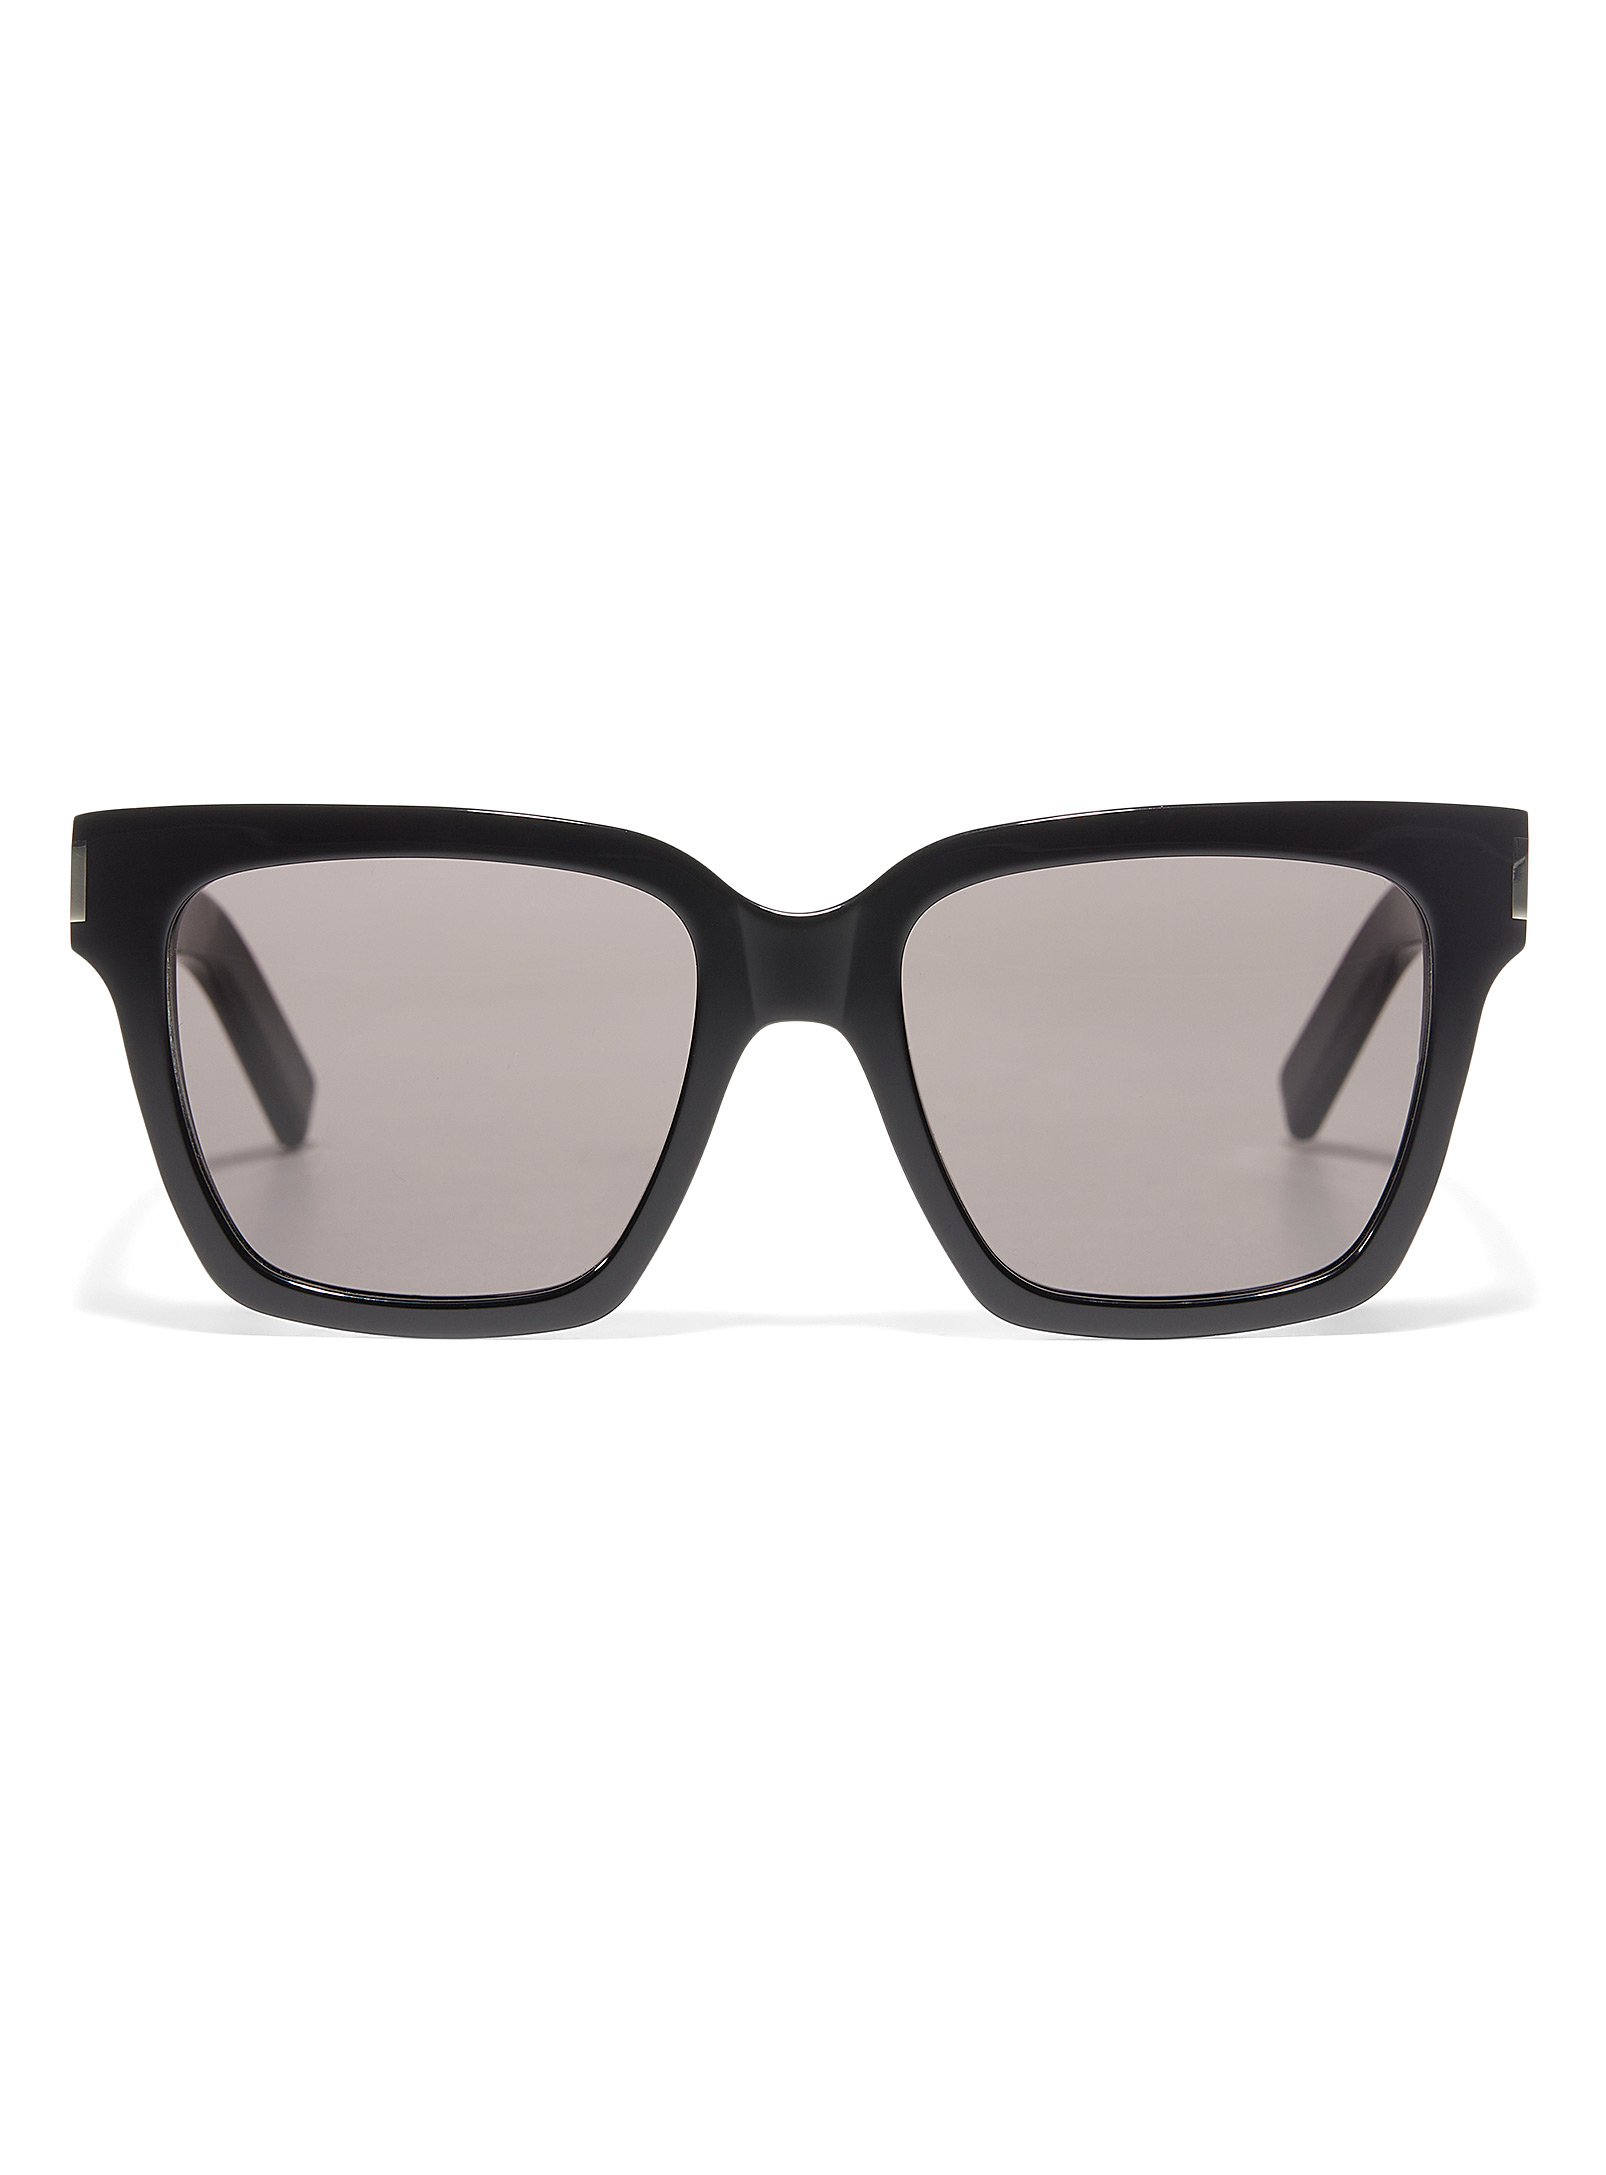 Saint Laurent - Les lunettes de soleil carrées noires lustrées